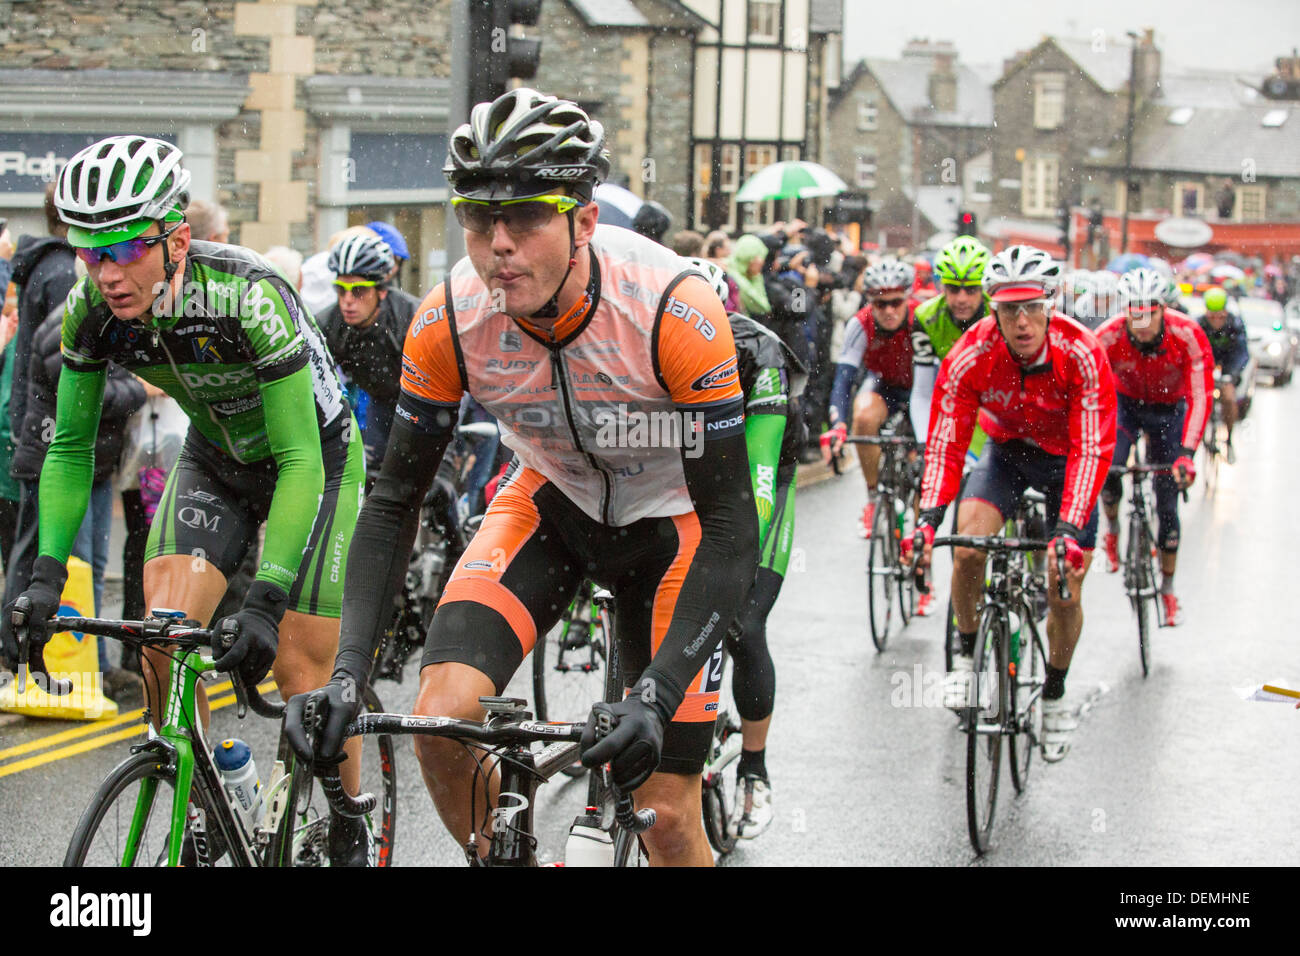 Le Tour de Bretagne cycliste têtes à travers Ambleside dans le Lake District, UK, avec la foule qui tapissent les rues. Banque D'Images